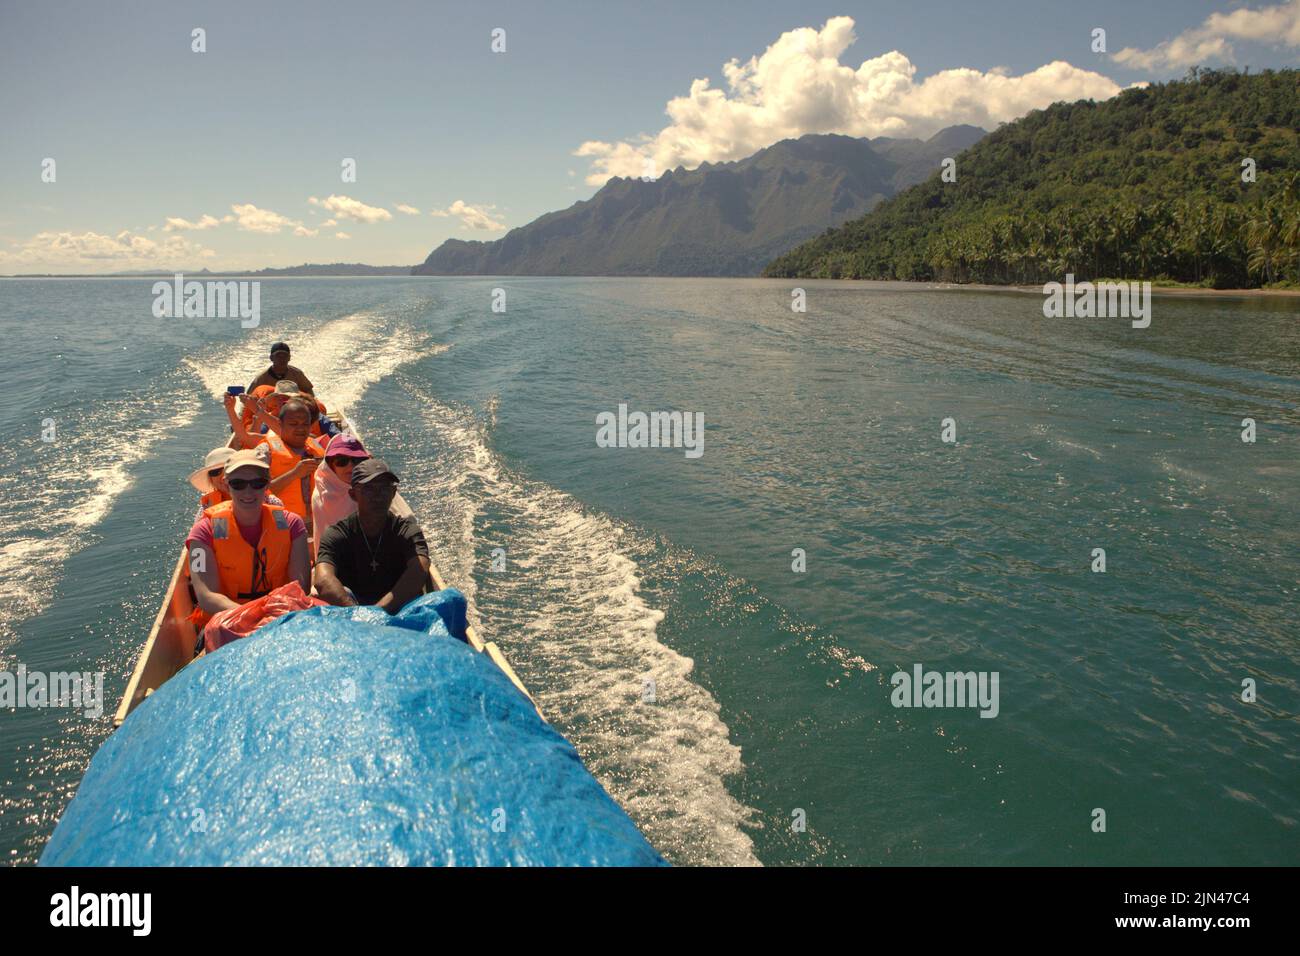 Un barco que transporta turistas navega por el agua frente a la costa de la isla de Seram, cerca de la aldea de Moral en Seram Utara Barat, Maluku Tengah, Maluku (Indonesia). Foto de stock